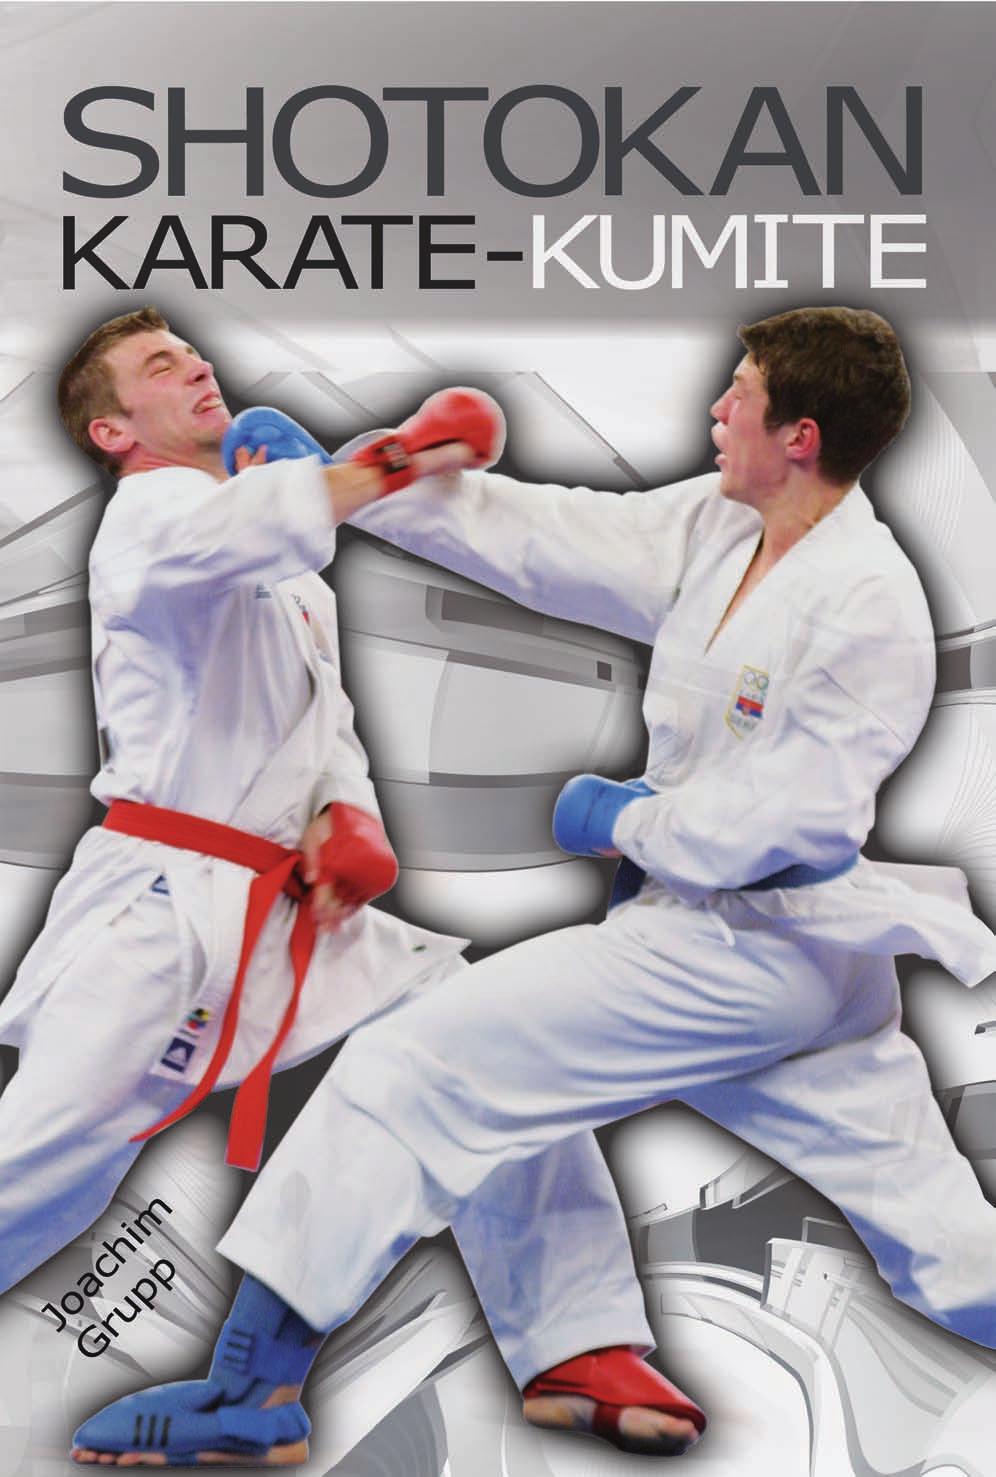 DAS BUCH Shotokan Karate Kumite behandelt die Varianten des Kampfes im Karate.